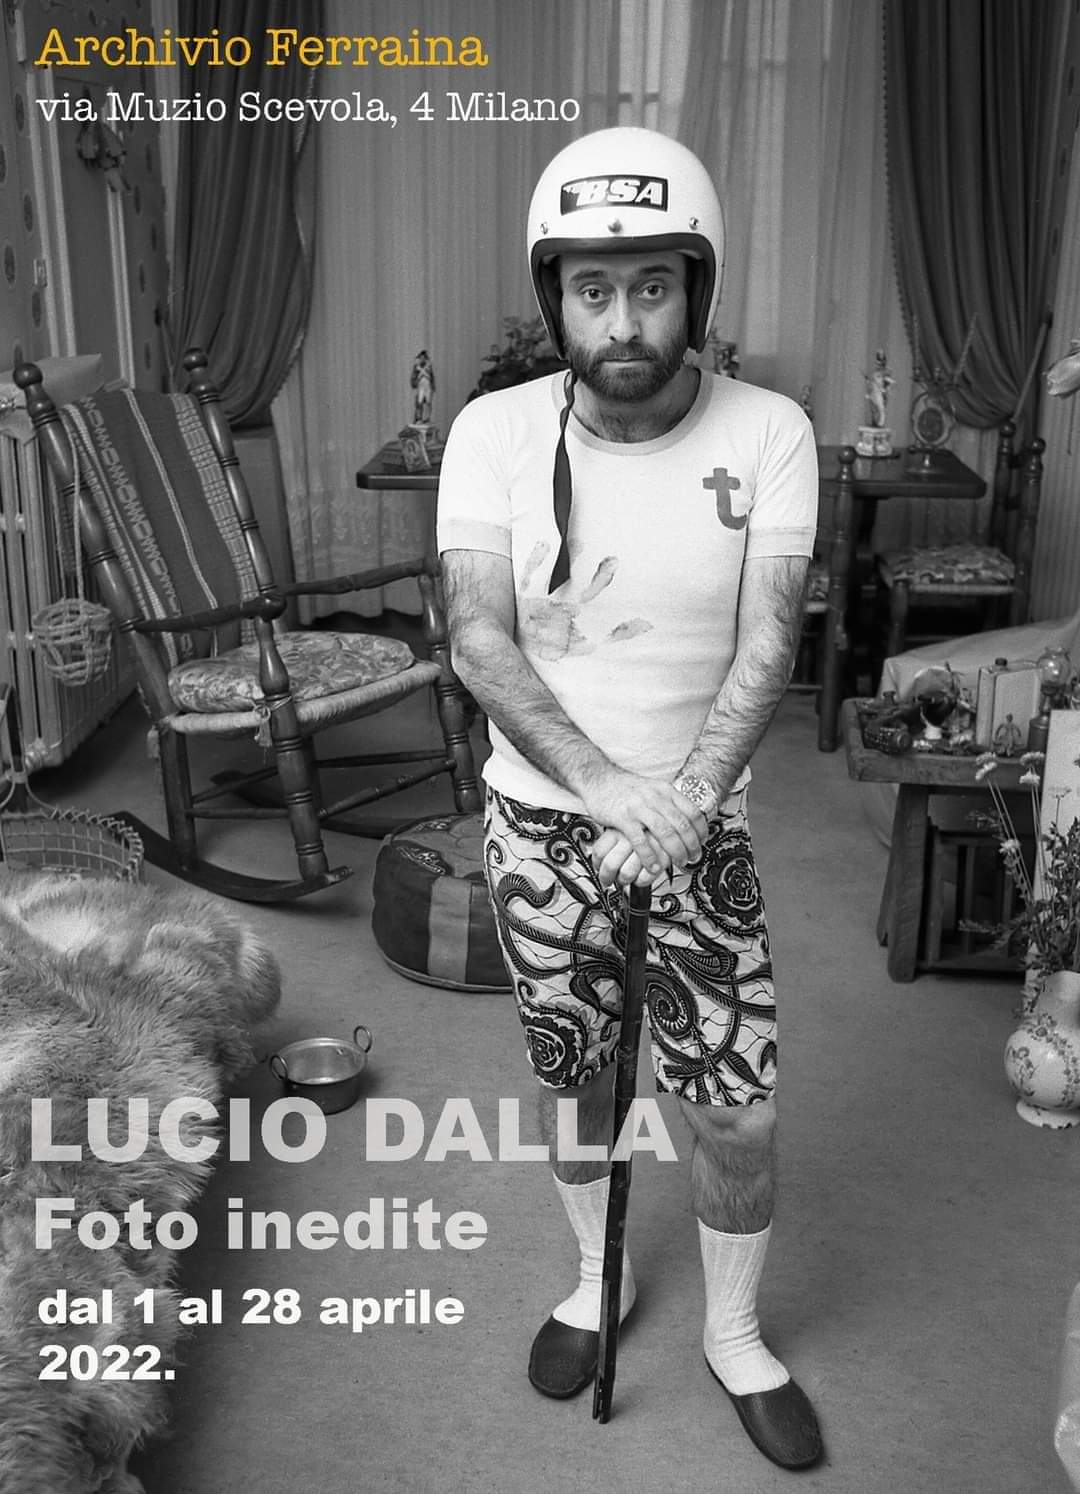 Una mostra fotografica dedicata a Lucio Dalla